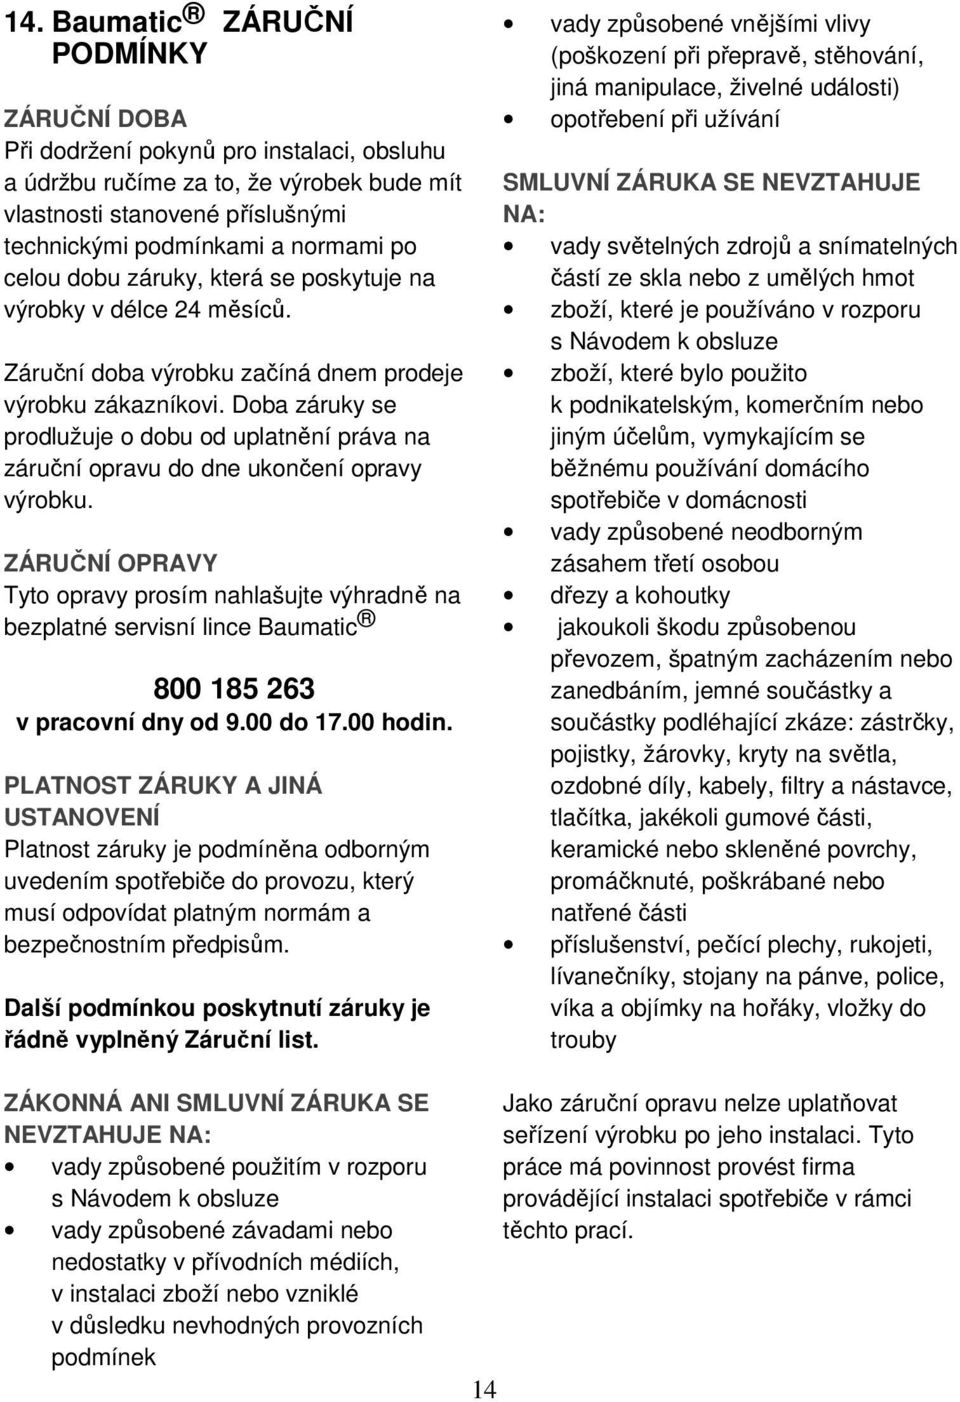 VESTAVNÁ VELKOKAPACITNÍ MULTIFUNKČNÍ TROUBA B260, B260.1, B270, B275, TG1,  MG1, SB1 - PDF Free Download